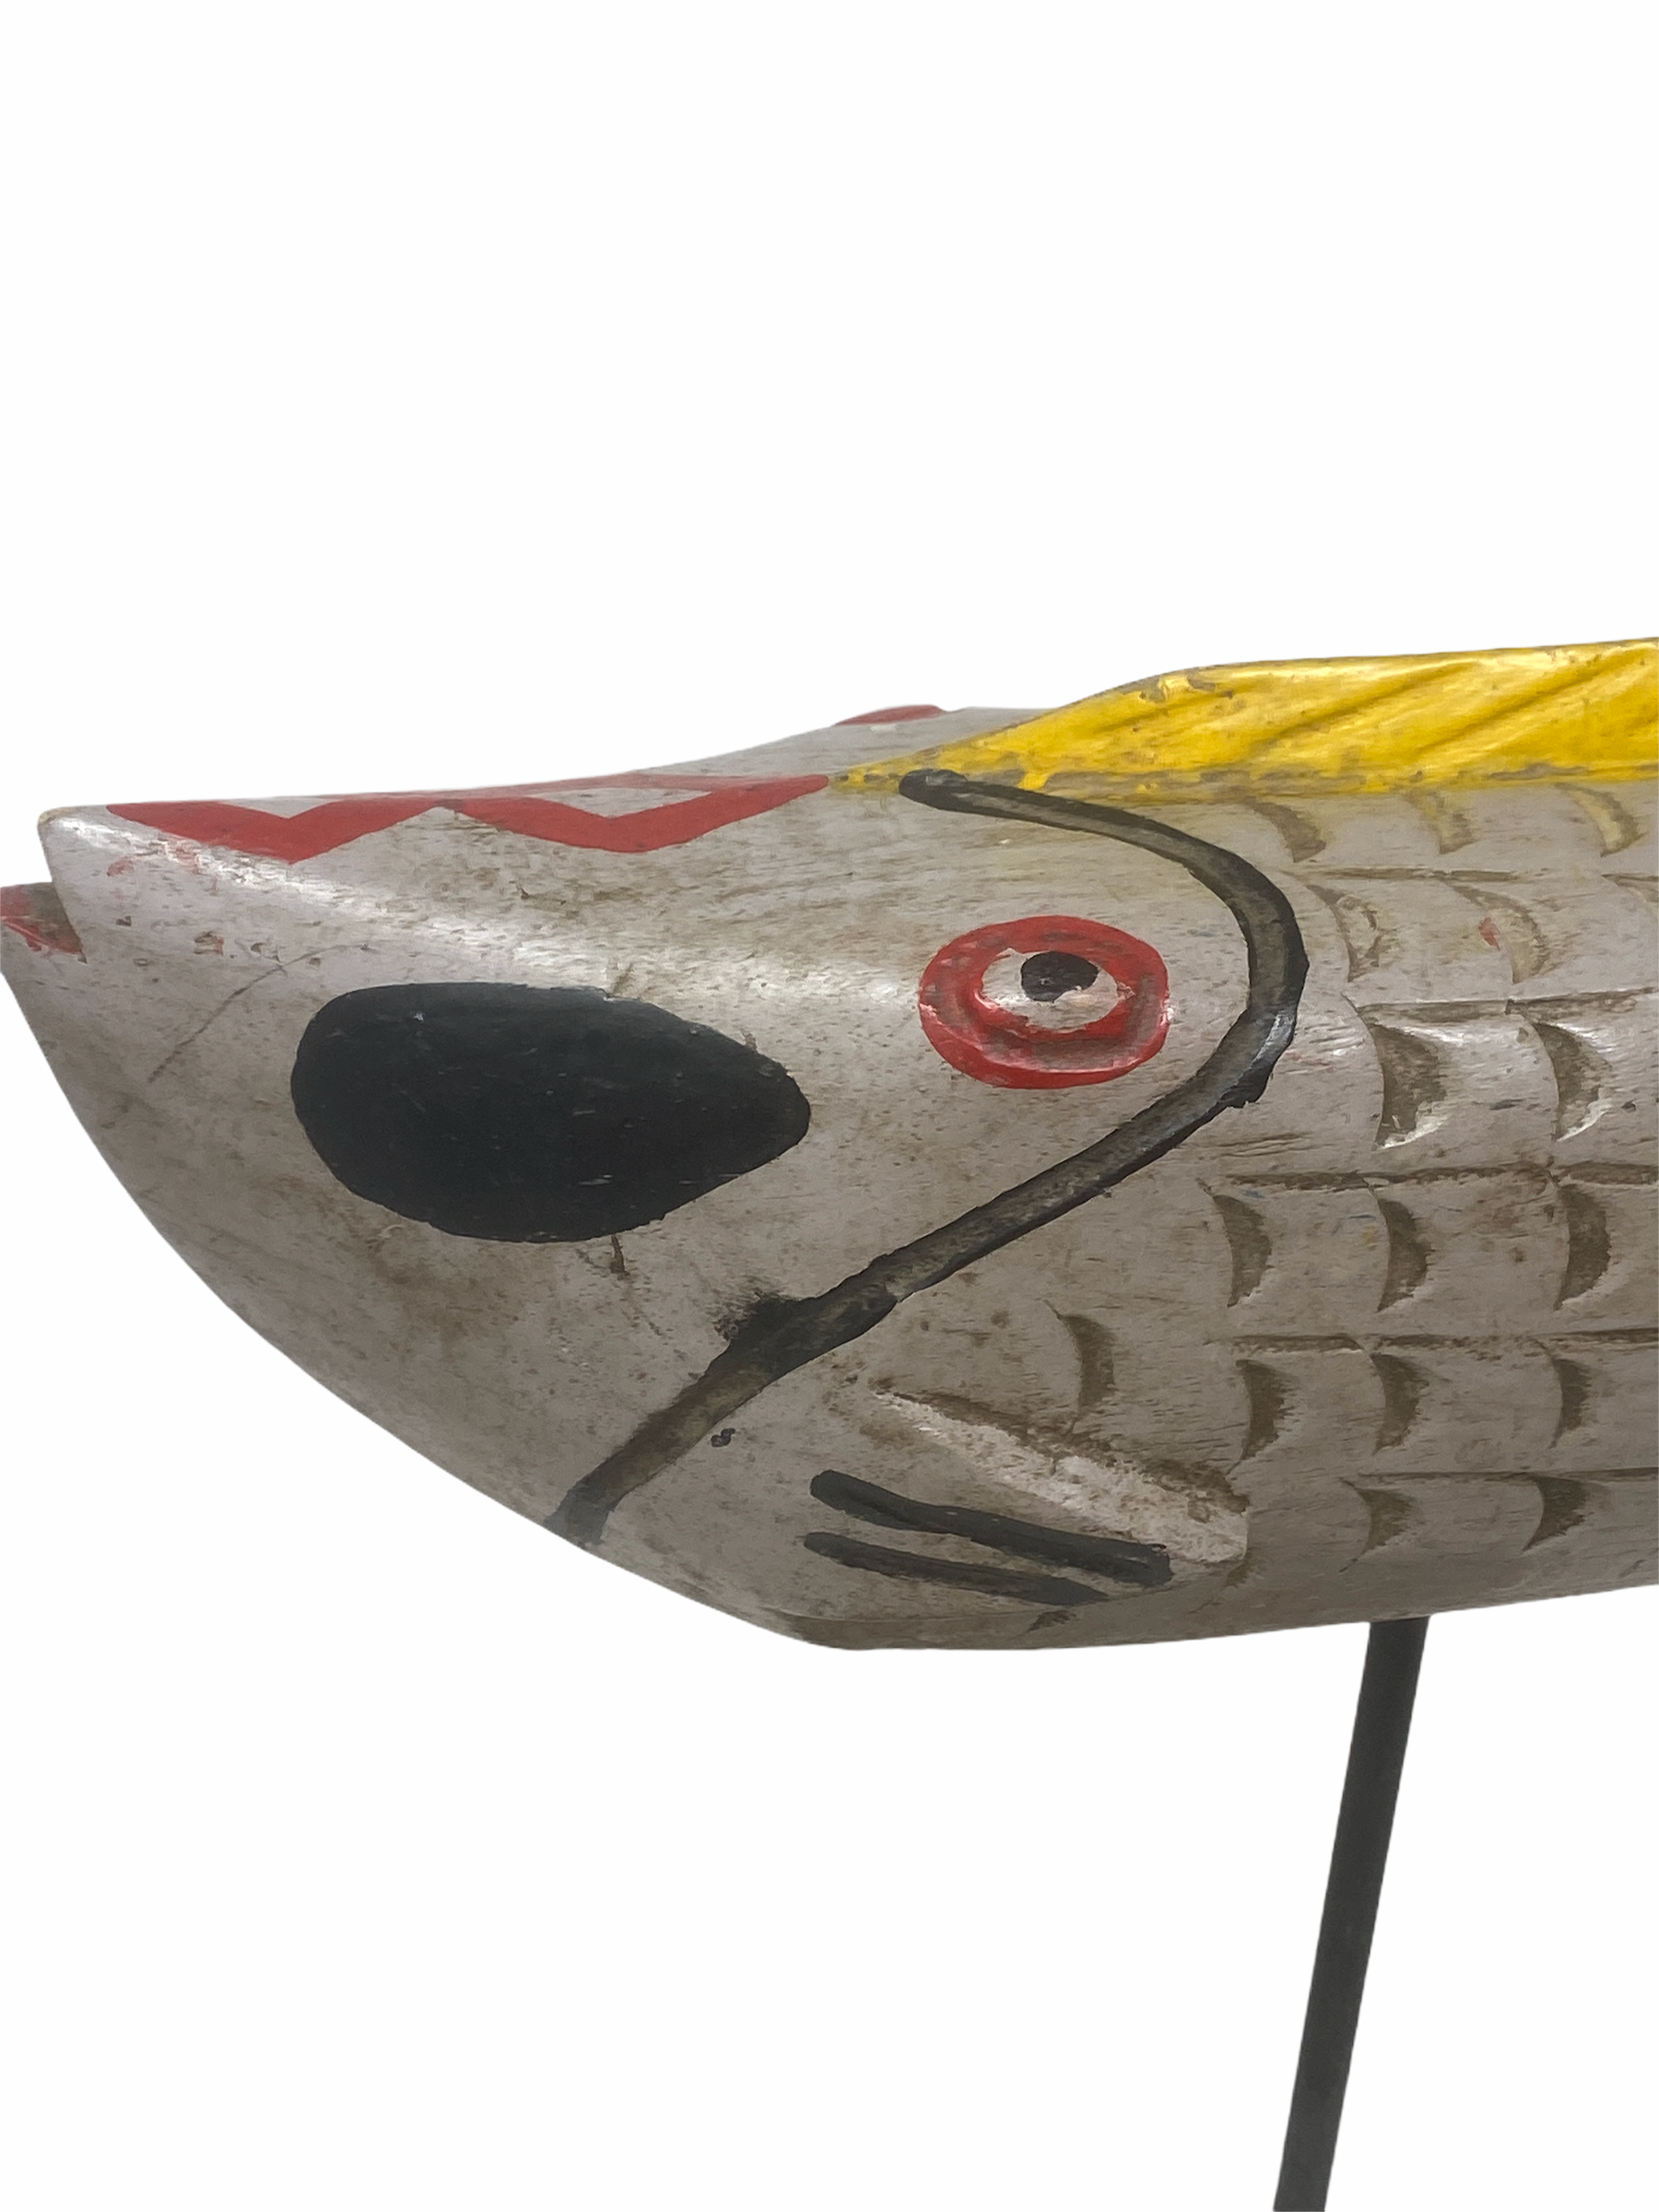 Bozo Puppet Fish Mali -  Large